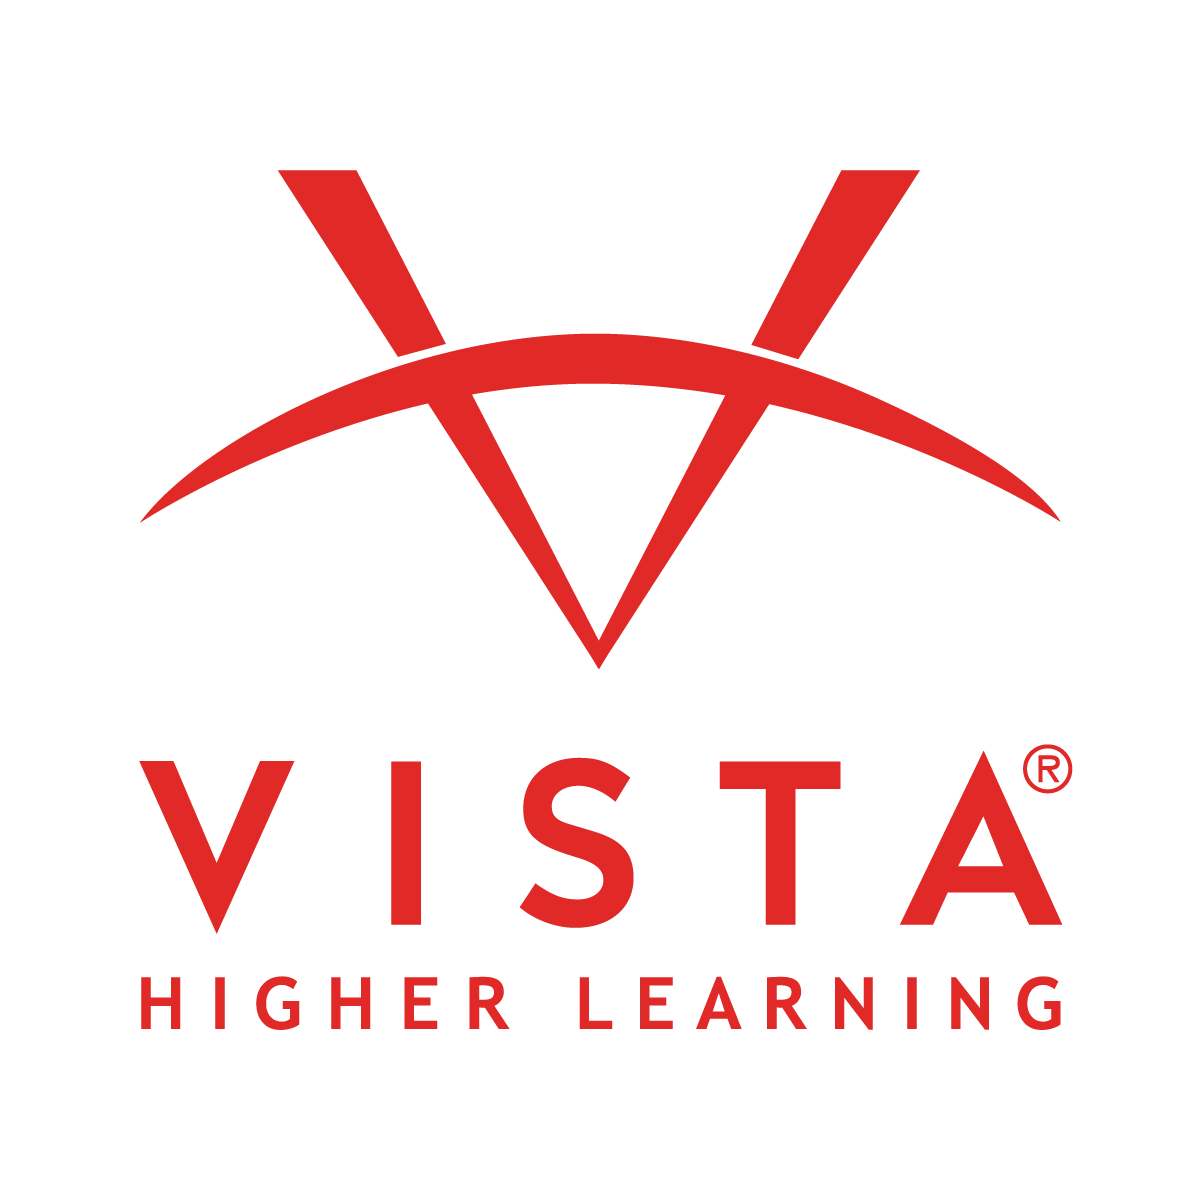 Vista Higher Education logo